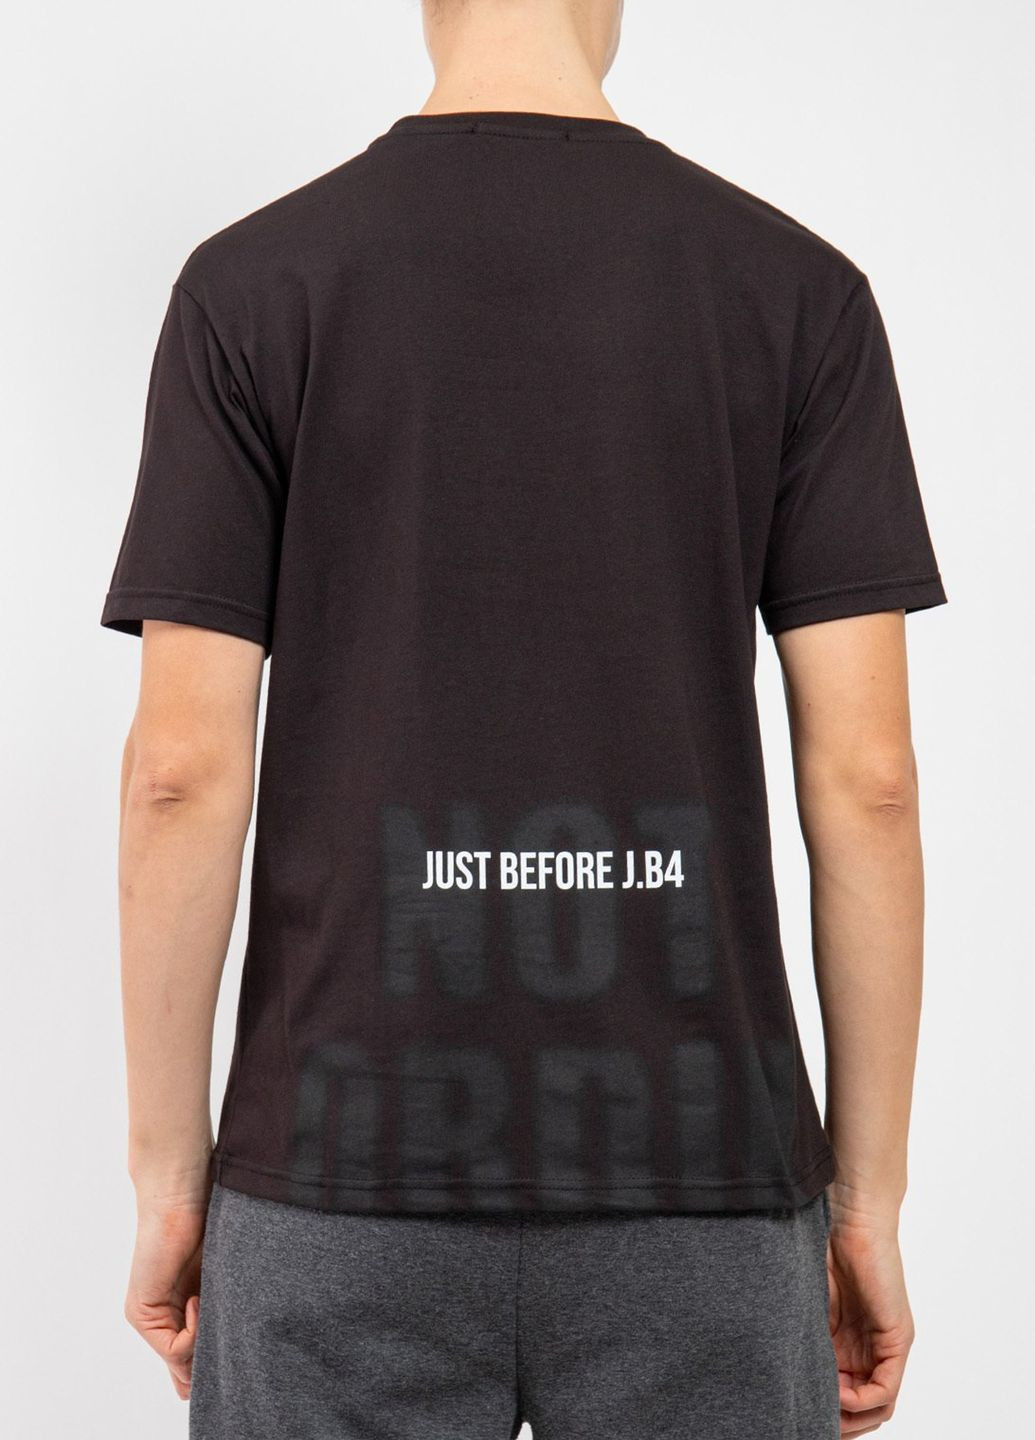 Чорна футболка J.B4 (Just Before)